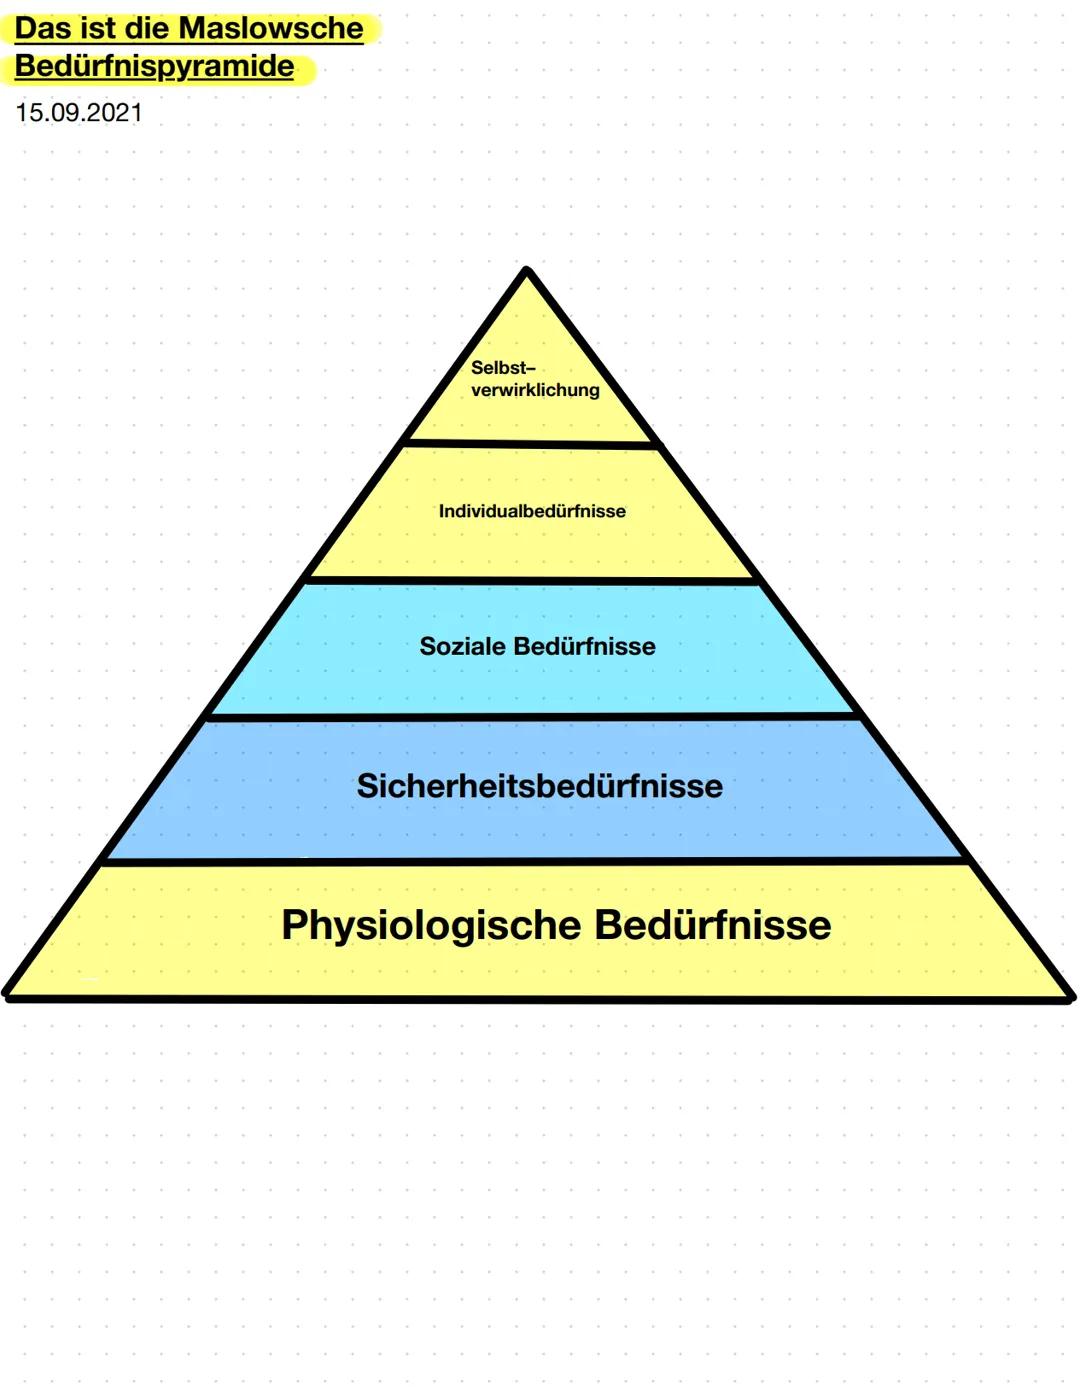 Das ist die Maslowsche
Bedürfnispyramide
15.09.2021
Selbst-
verwirklichung
Individualbedürfnisse
Soziale Bedürfnisse
Sicherheitsbedürfnisse
